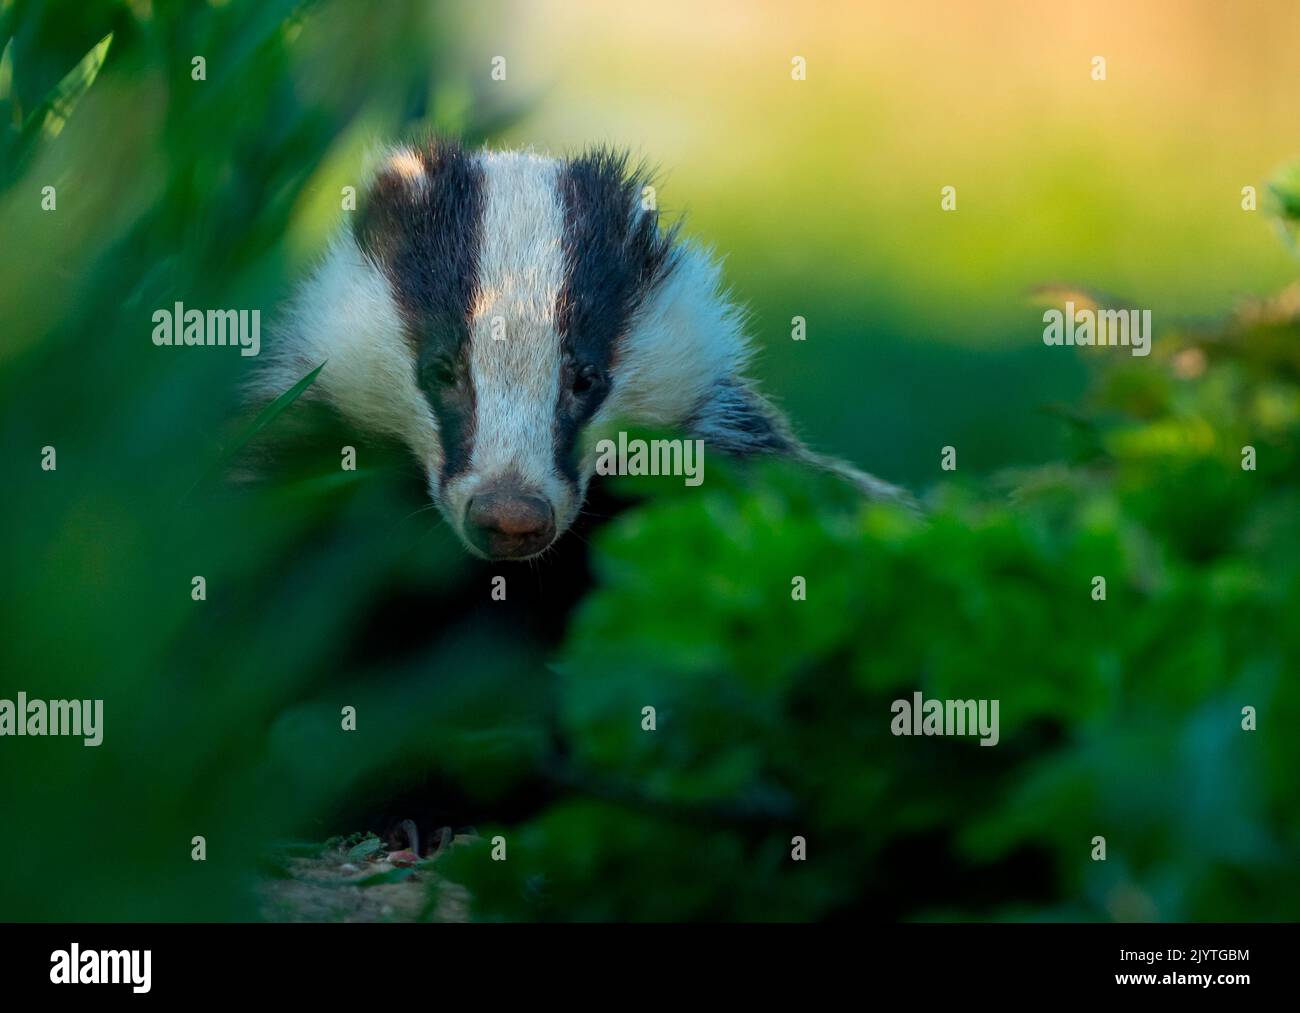 Badger (Meles meles) amongst grass at sunset, England Stock Photo